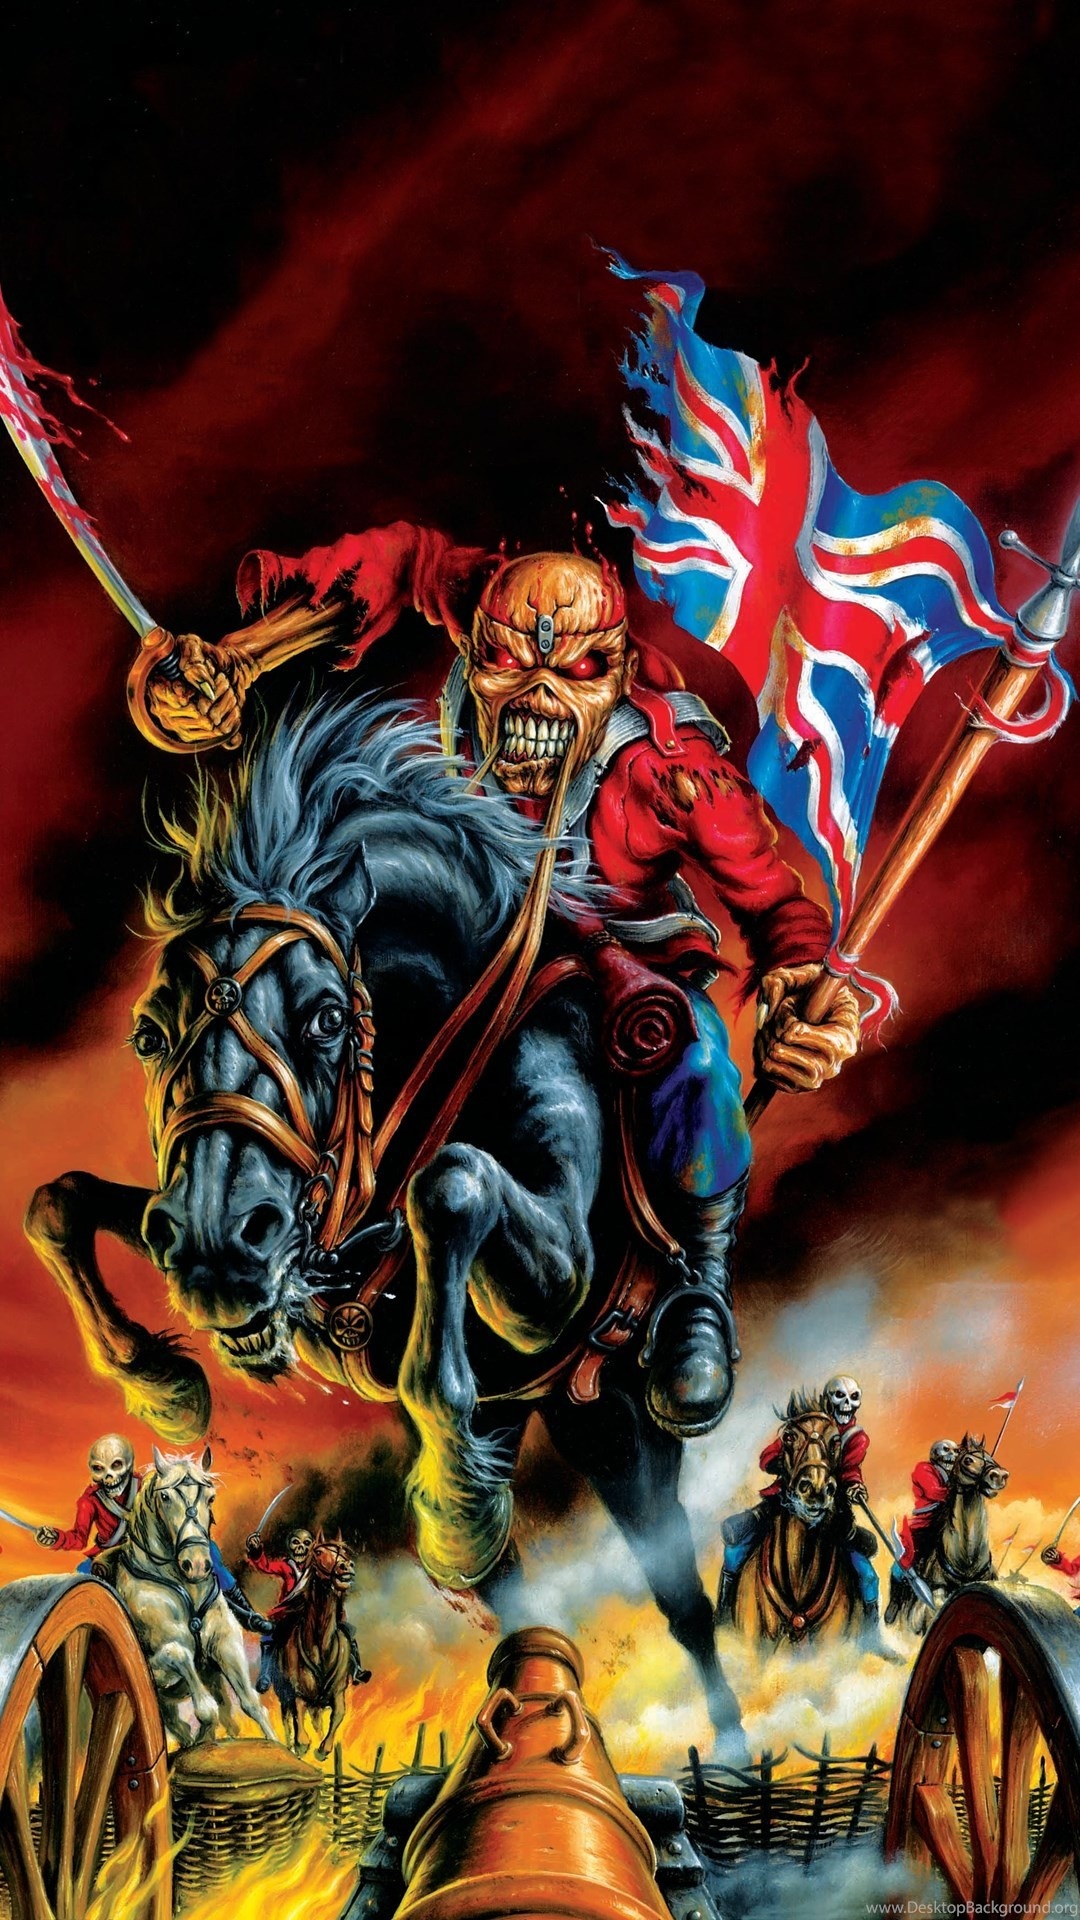 Iron Maiden Band Music, Striking wallpaper art, Visual tribute, Band's legendary status, 1080x1920 Full HD Phone